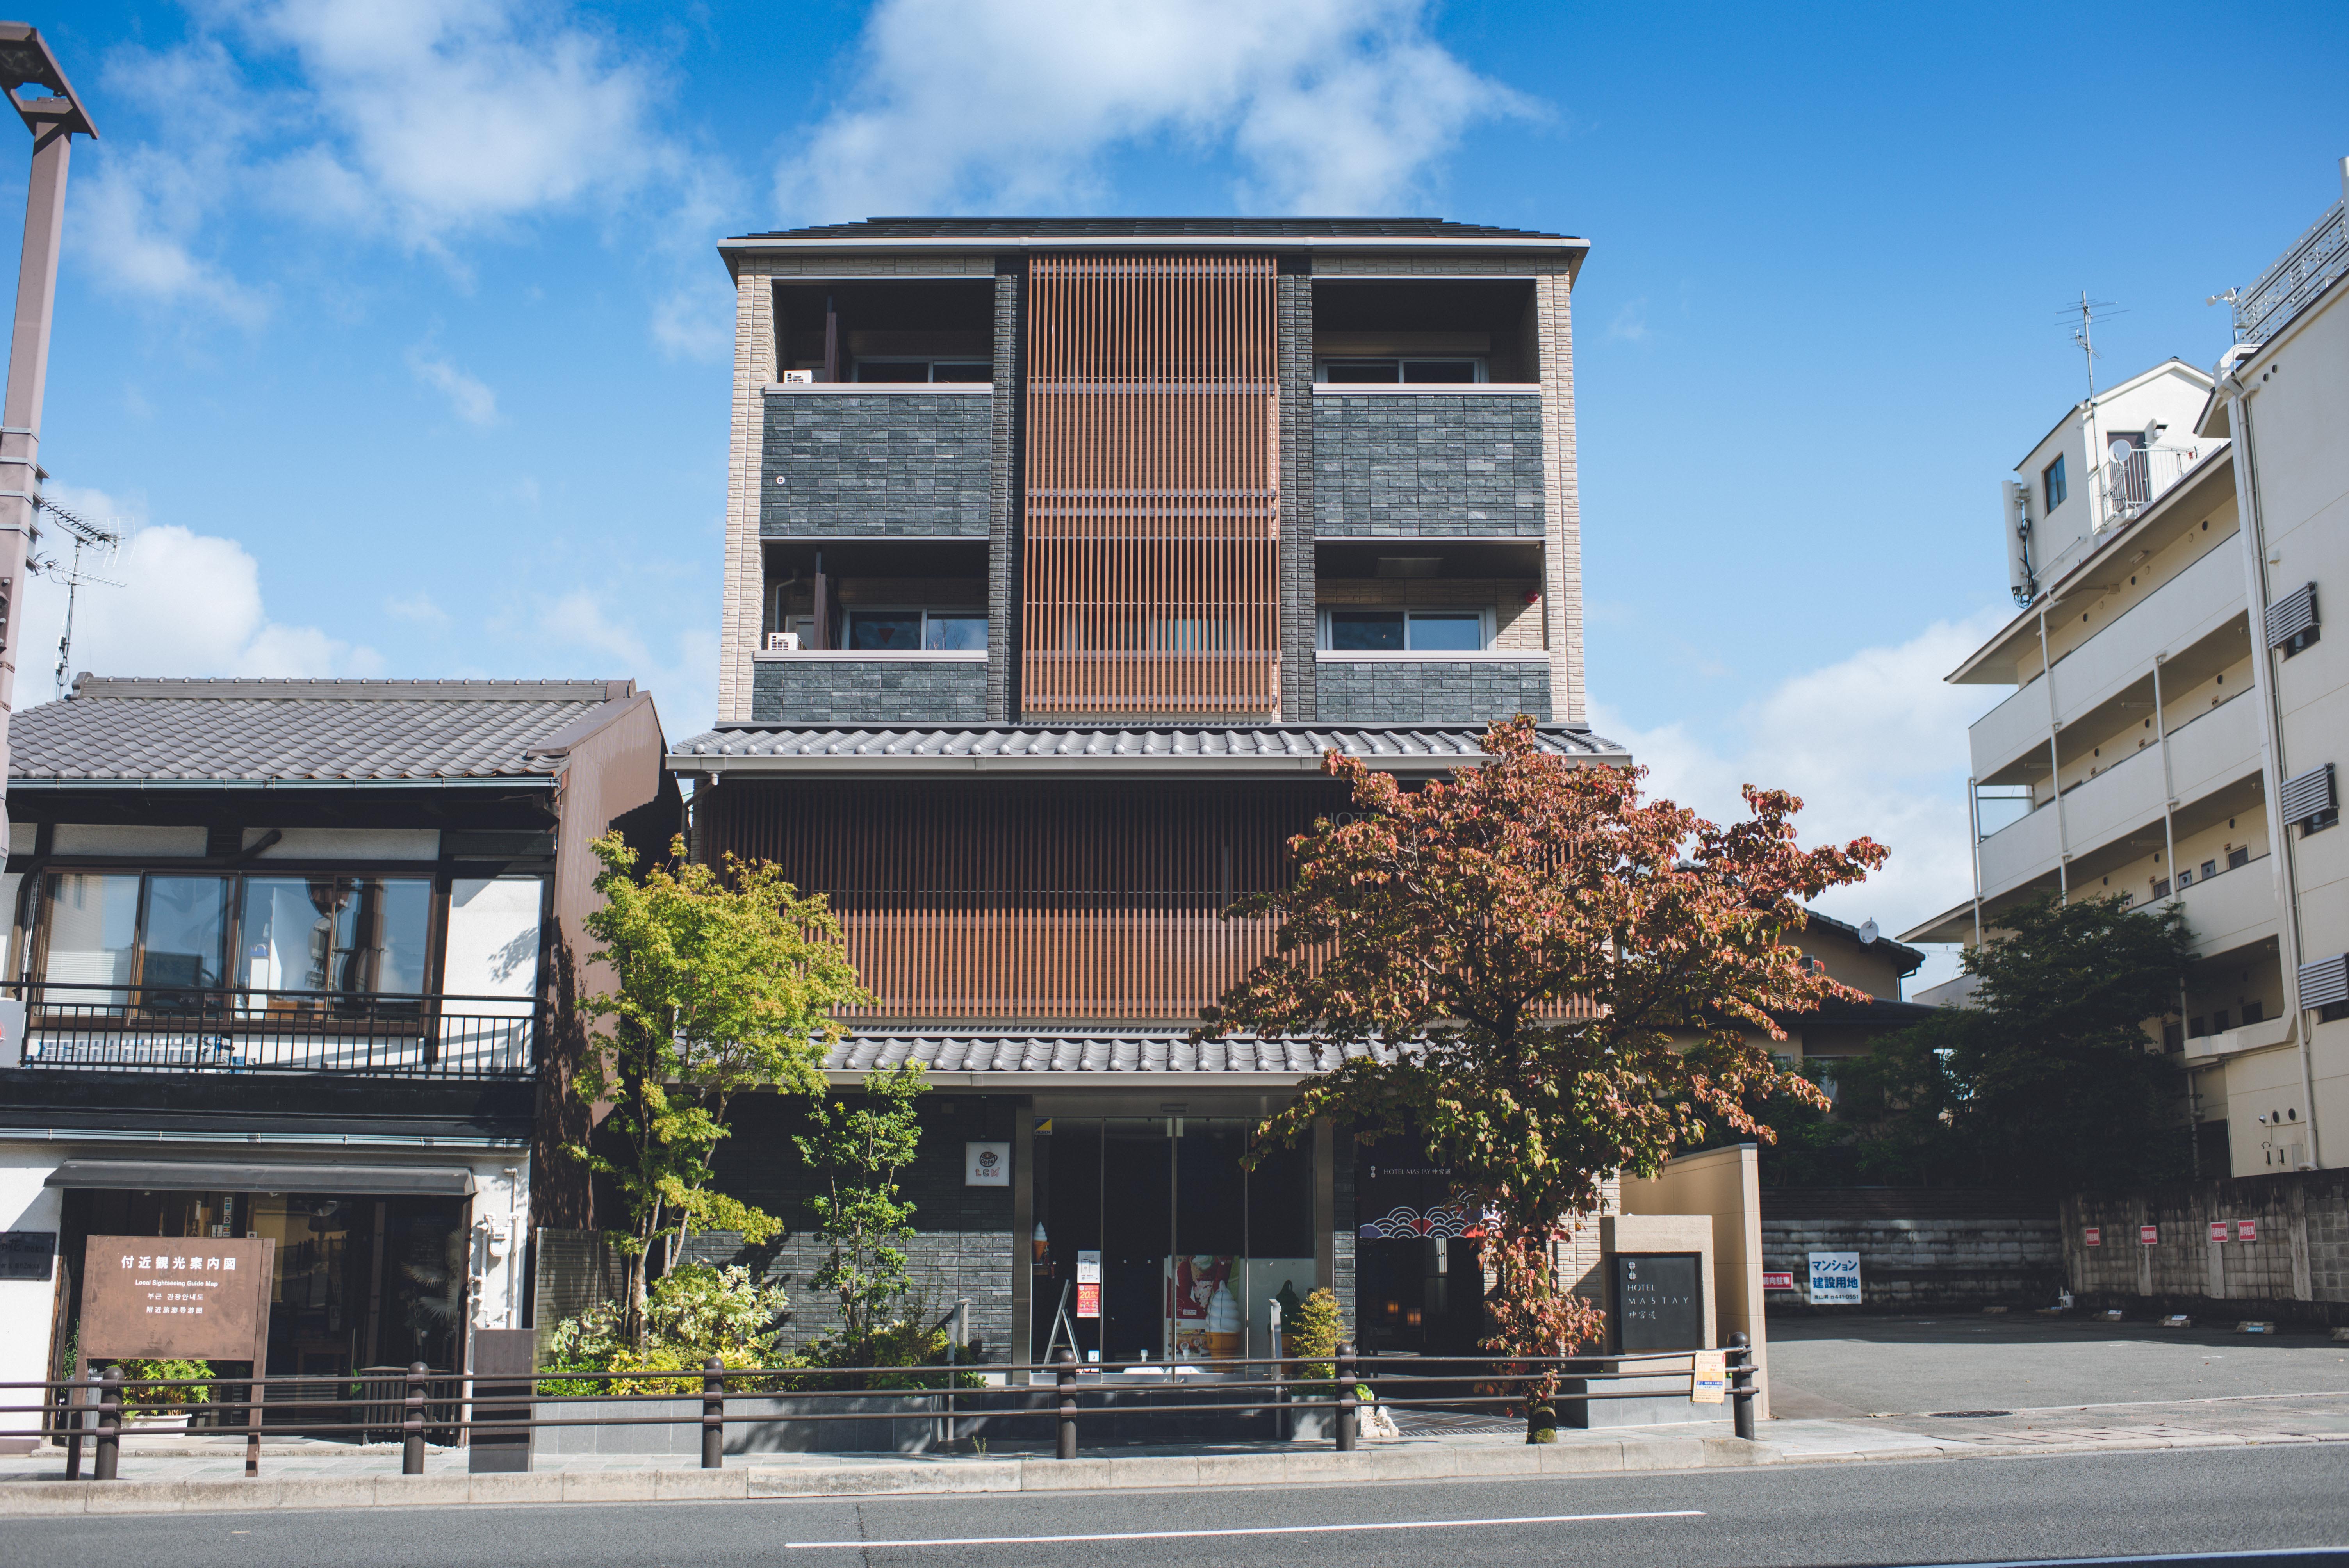 京都市京セラ美術館の金曜ロードショーとジブリ展を見に行くのにおすすめのホテル